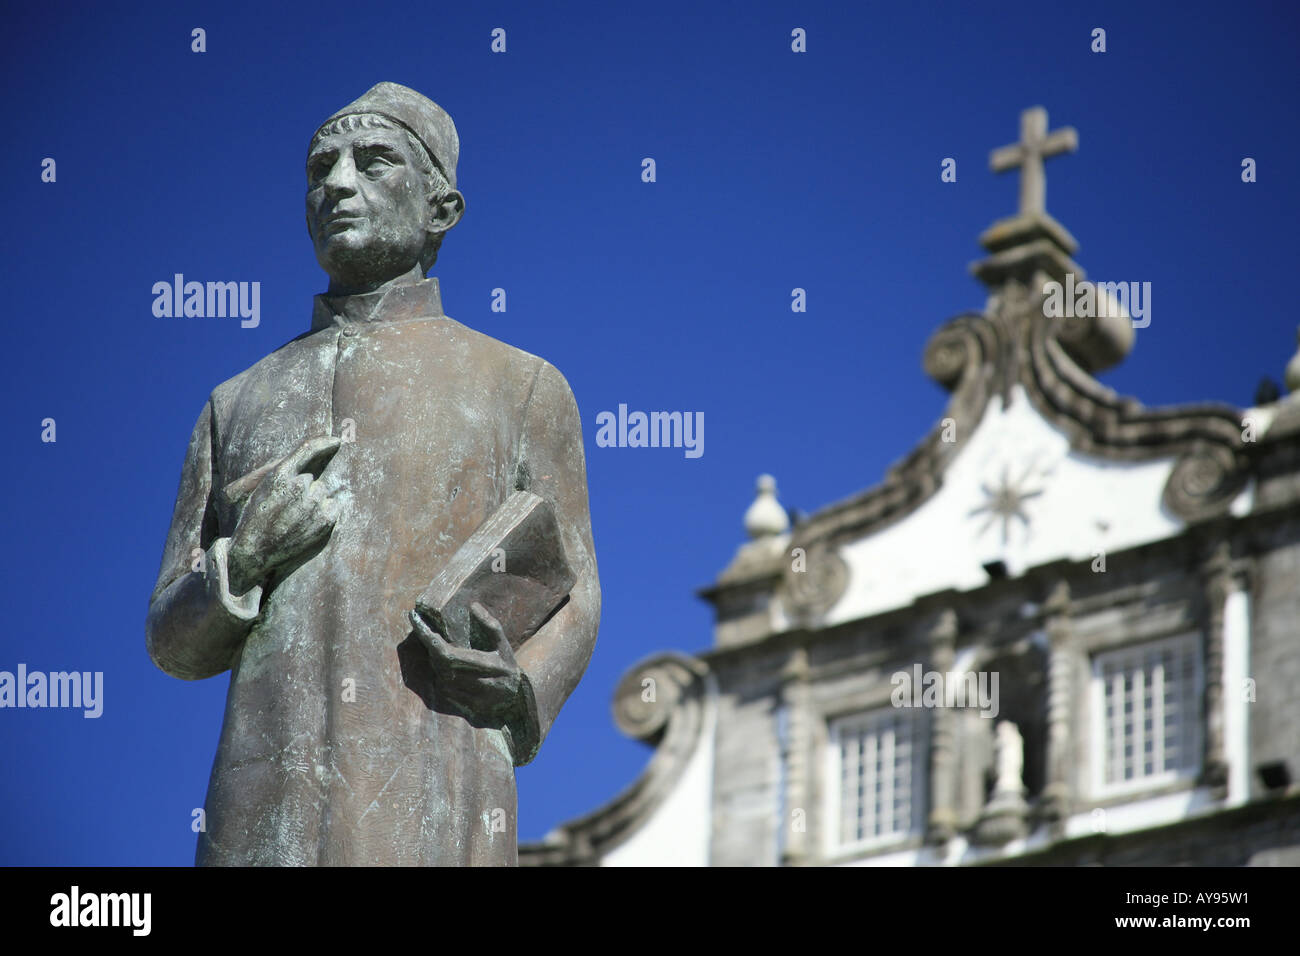 Statua di Gaspar Fructuoso, storico delle Azzorre, sacerdote e umanista. Città di Ribeira Grande, isole Azzorre. Foto Stock